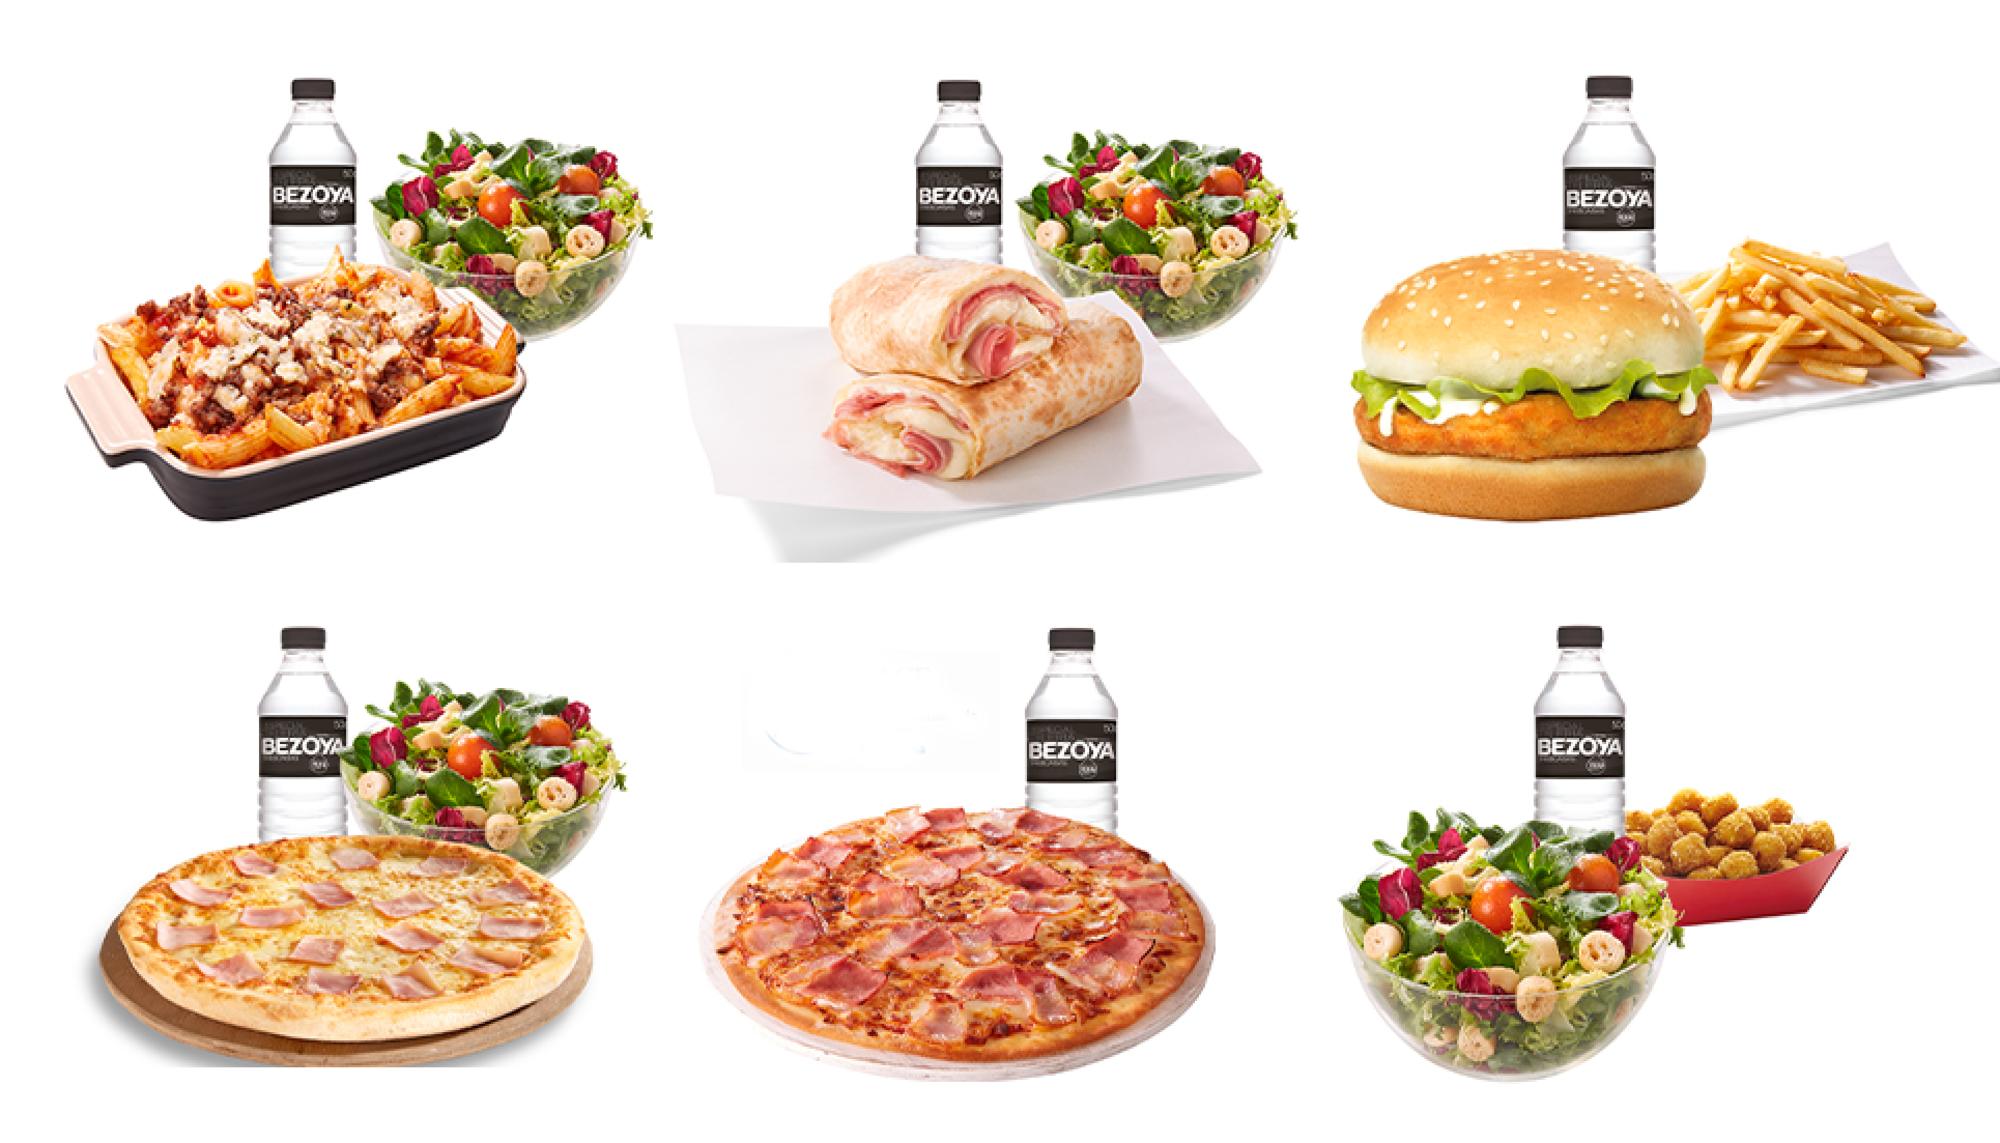 Los seis menús que ofrece Telepizza a las familias con menos recursos, según su propia página web.